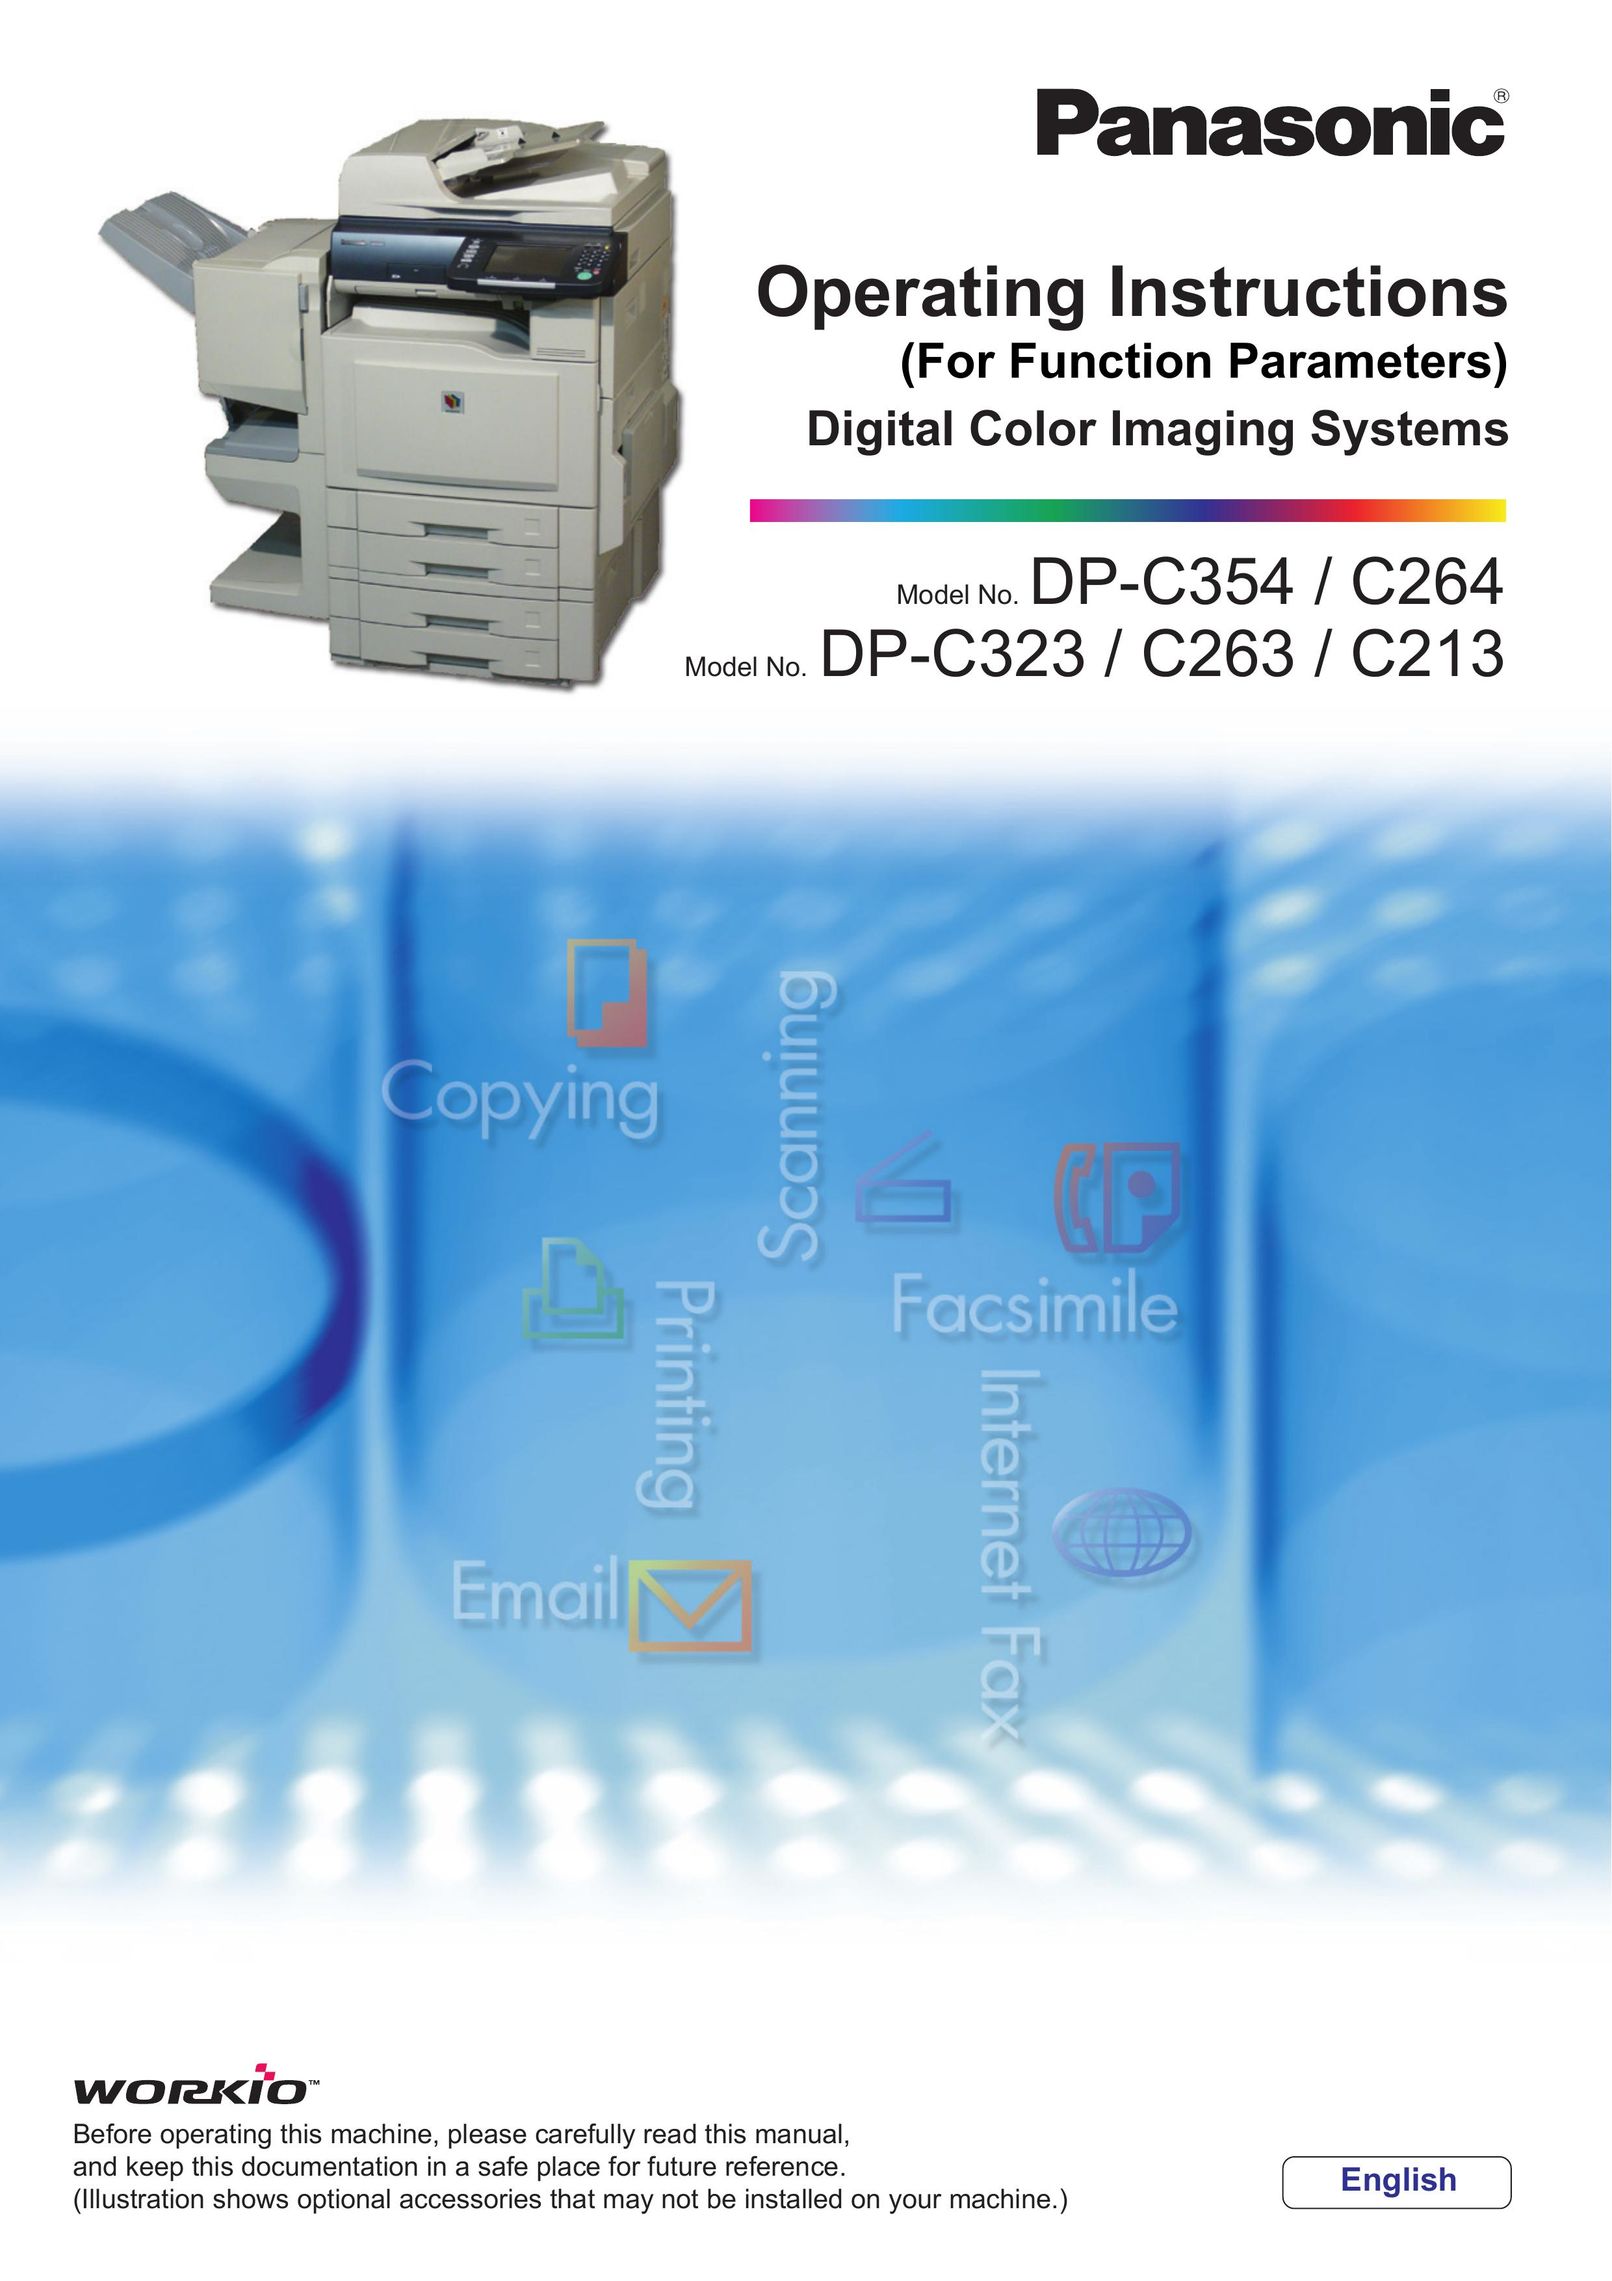 Panasonic DP-C213 Printer User Manual